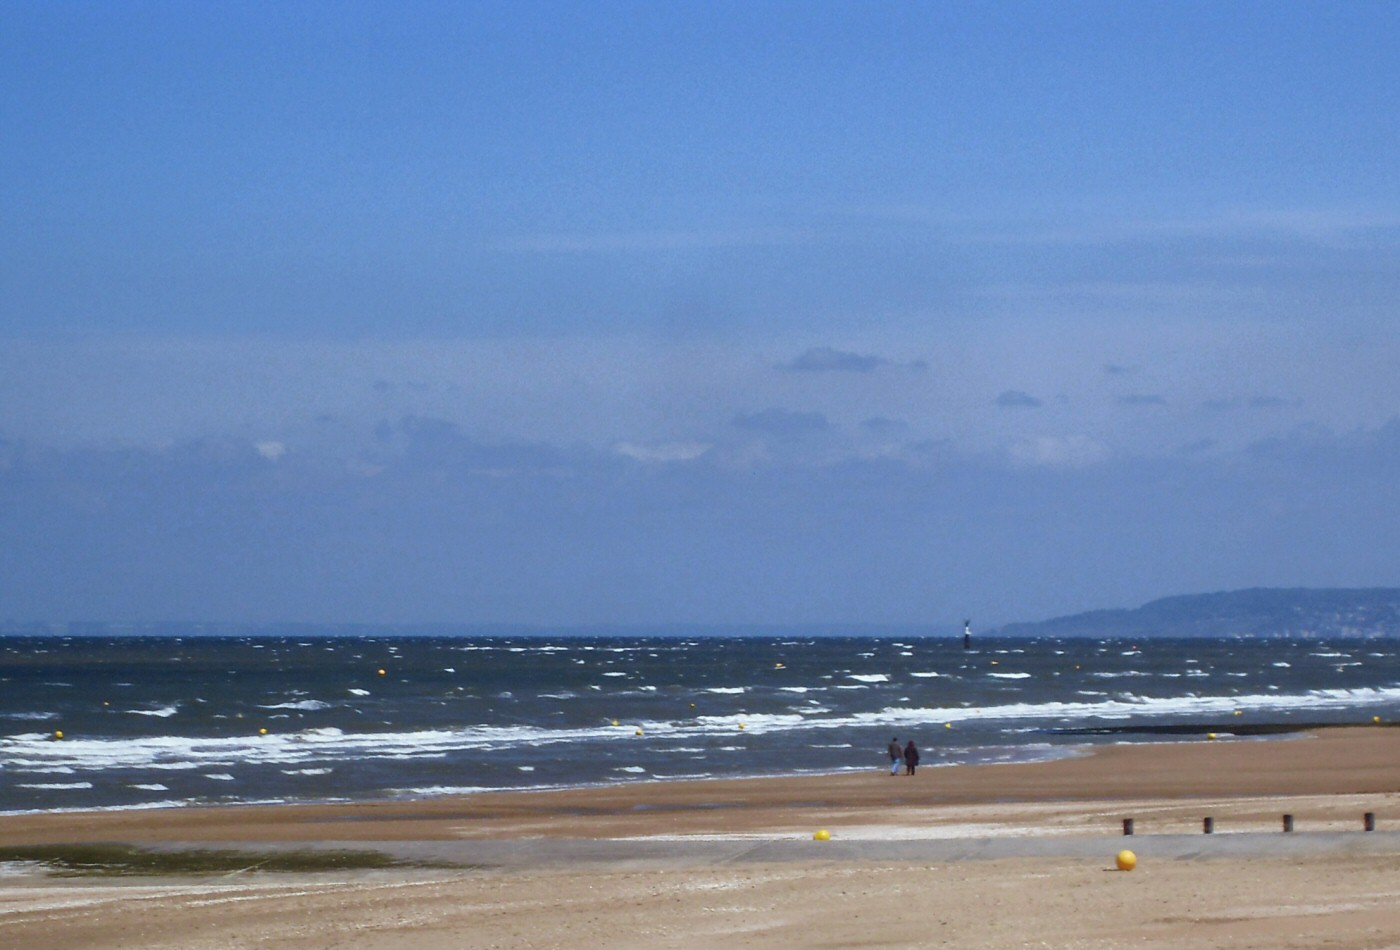 La plage de Cabourg et deux promeneurs